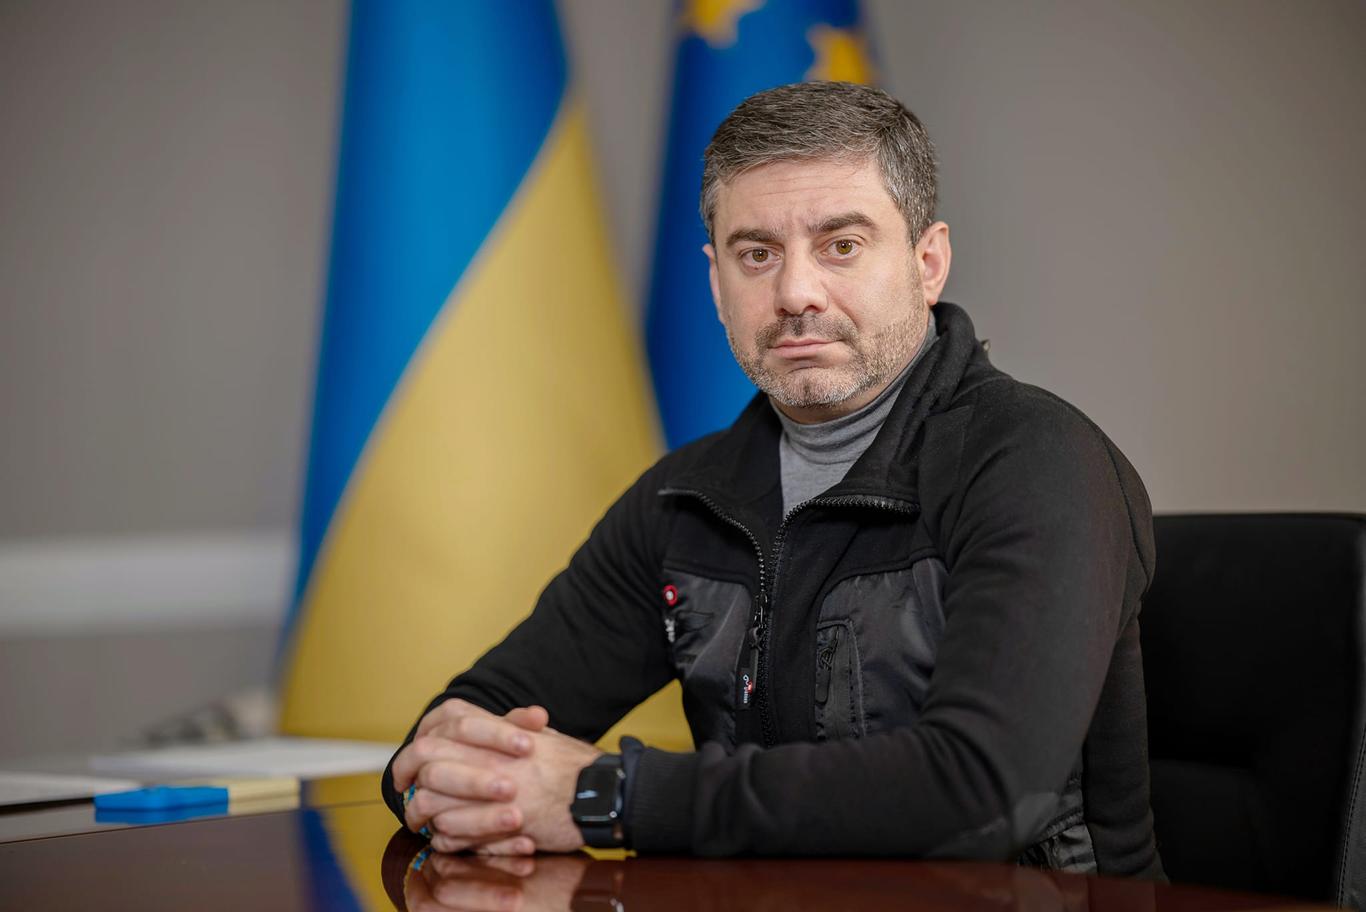 25 тисяч українців вважаються зниклими «за особливих обставин» — Лубінець